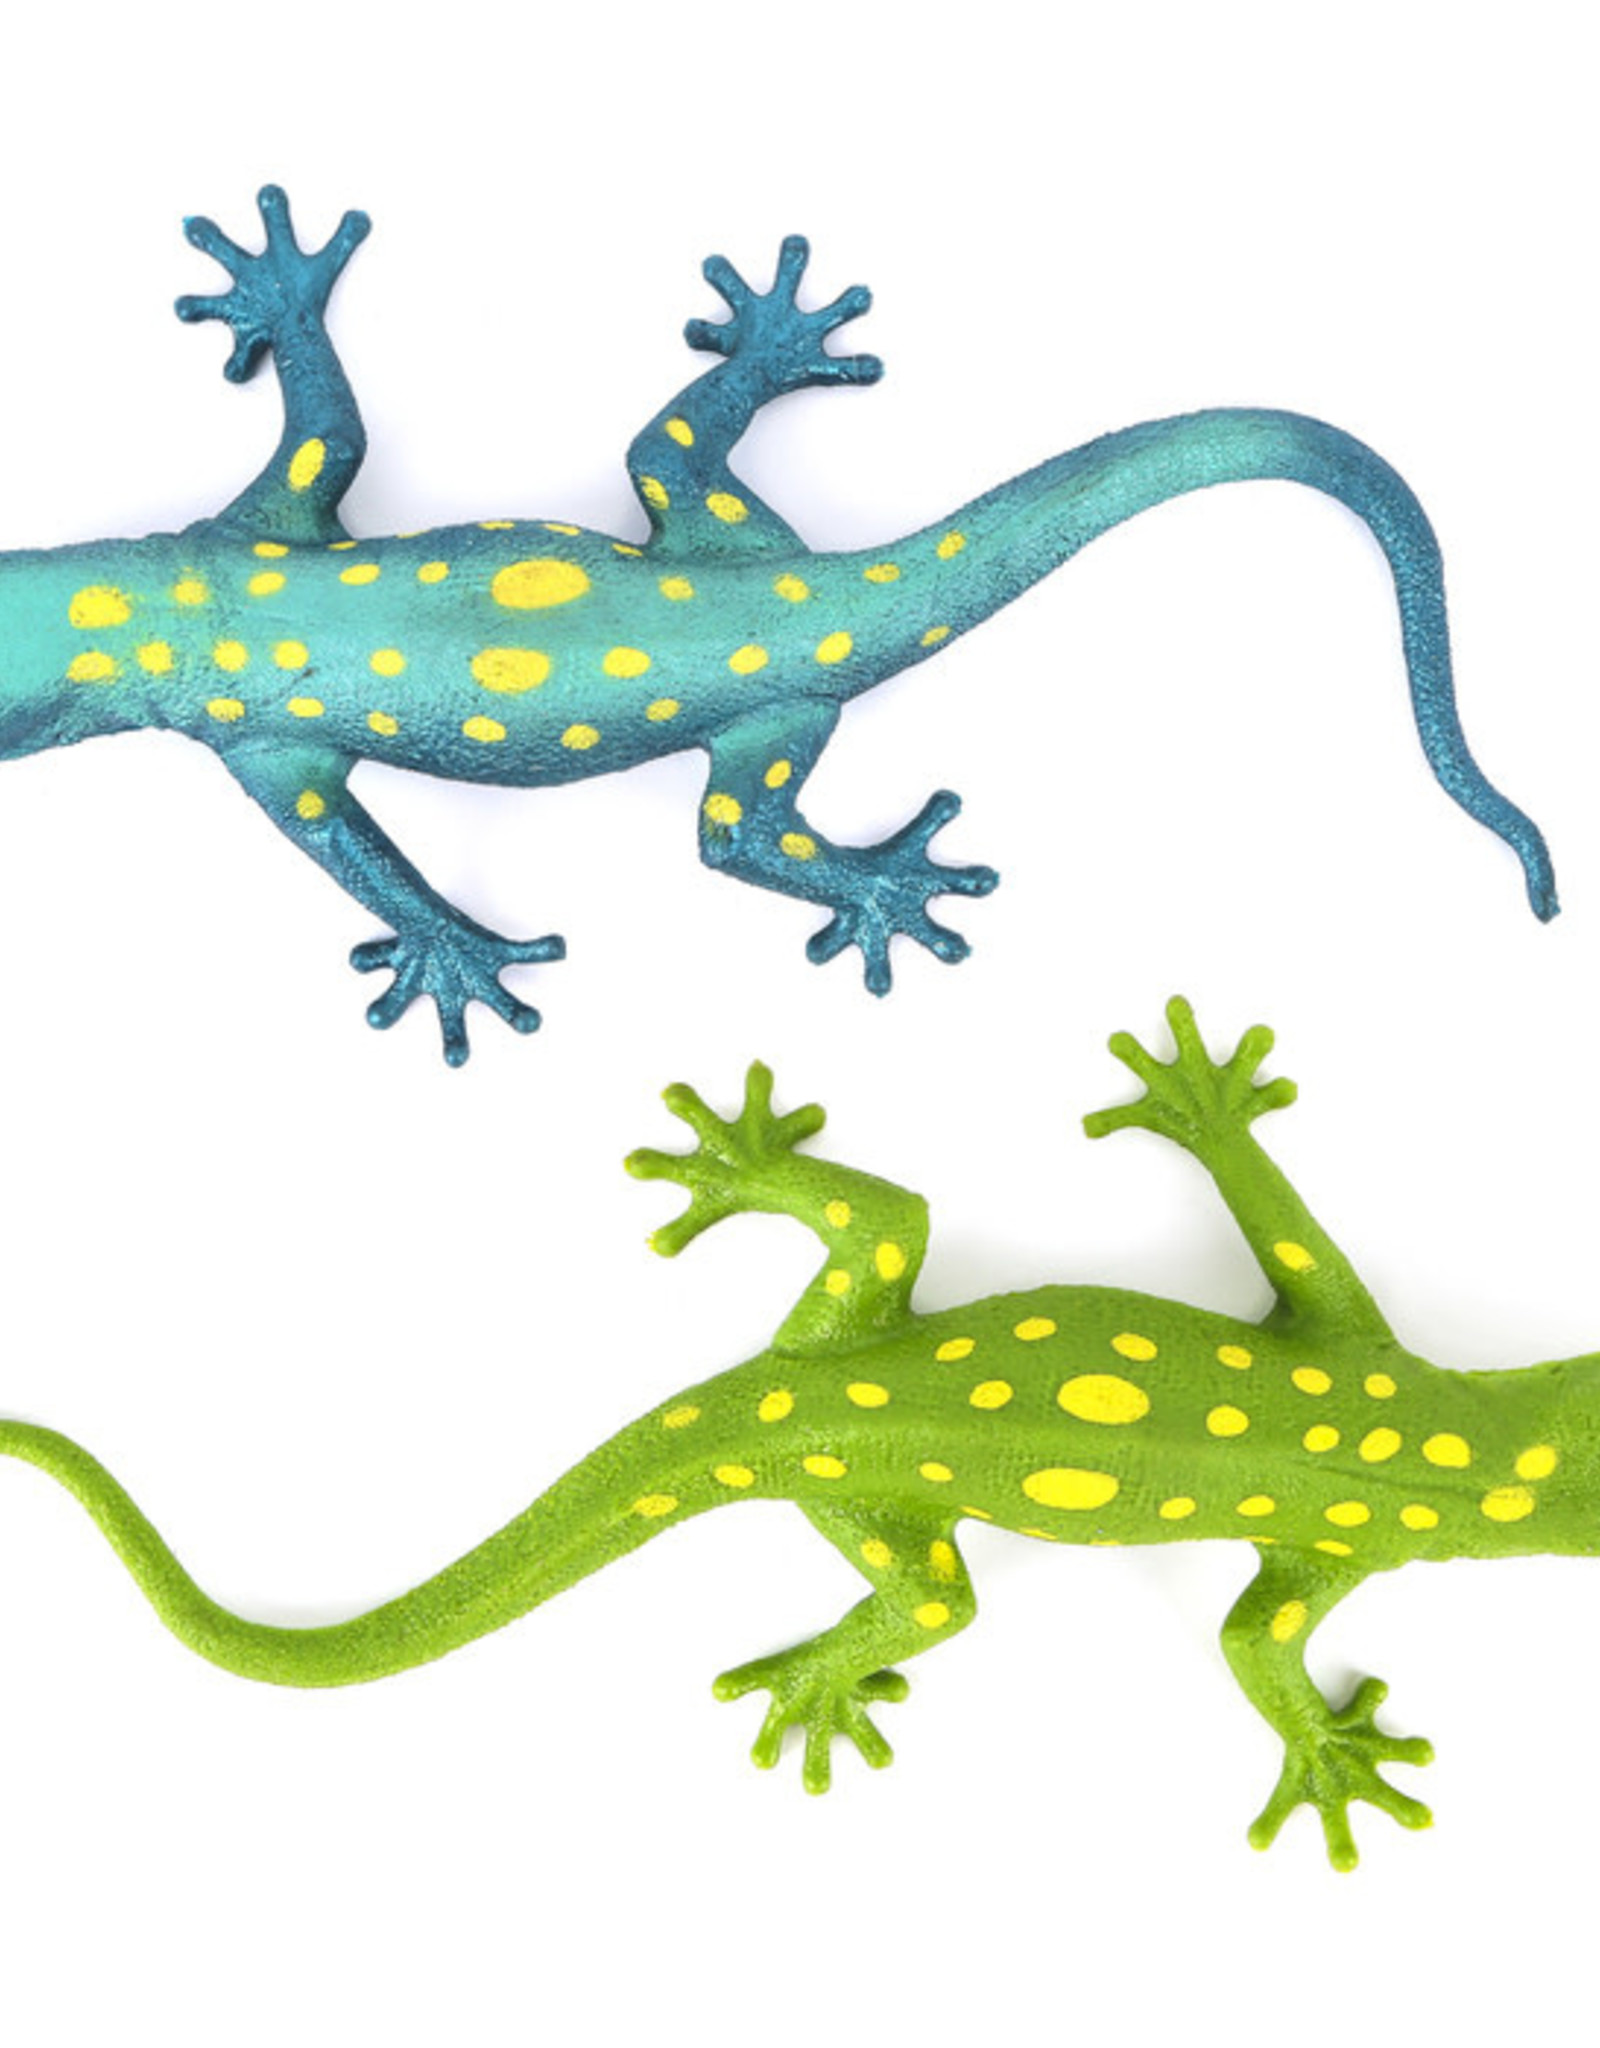 Lizard Squishimals